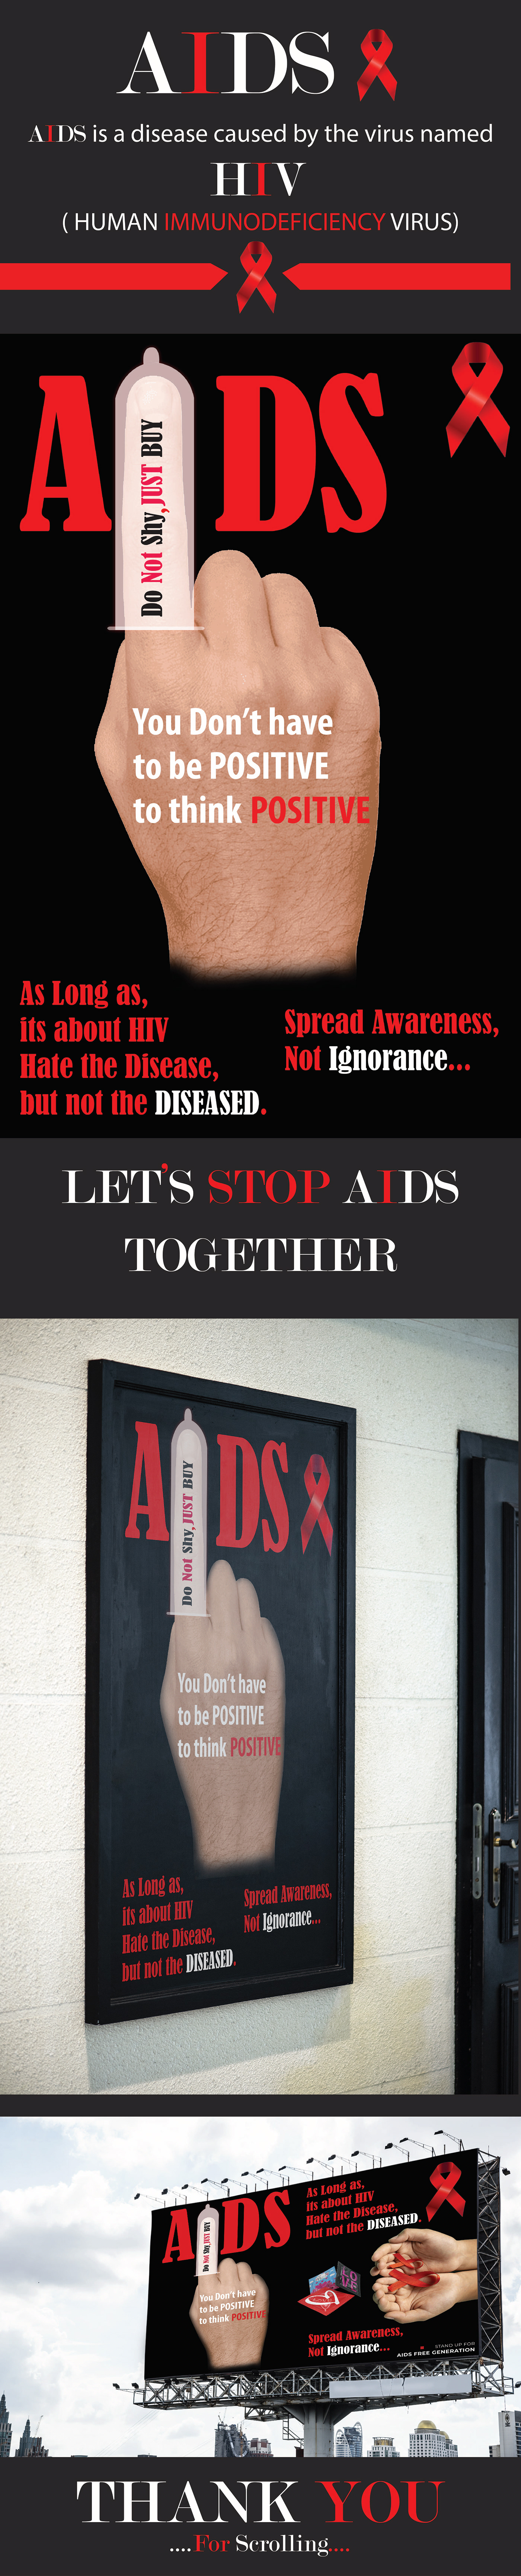 hiv awareness AIDS AWARENESS HIV aids awareness AIDS awareness poster Aids poster